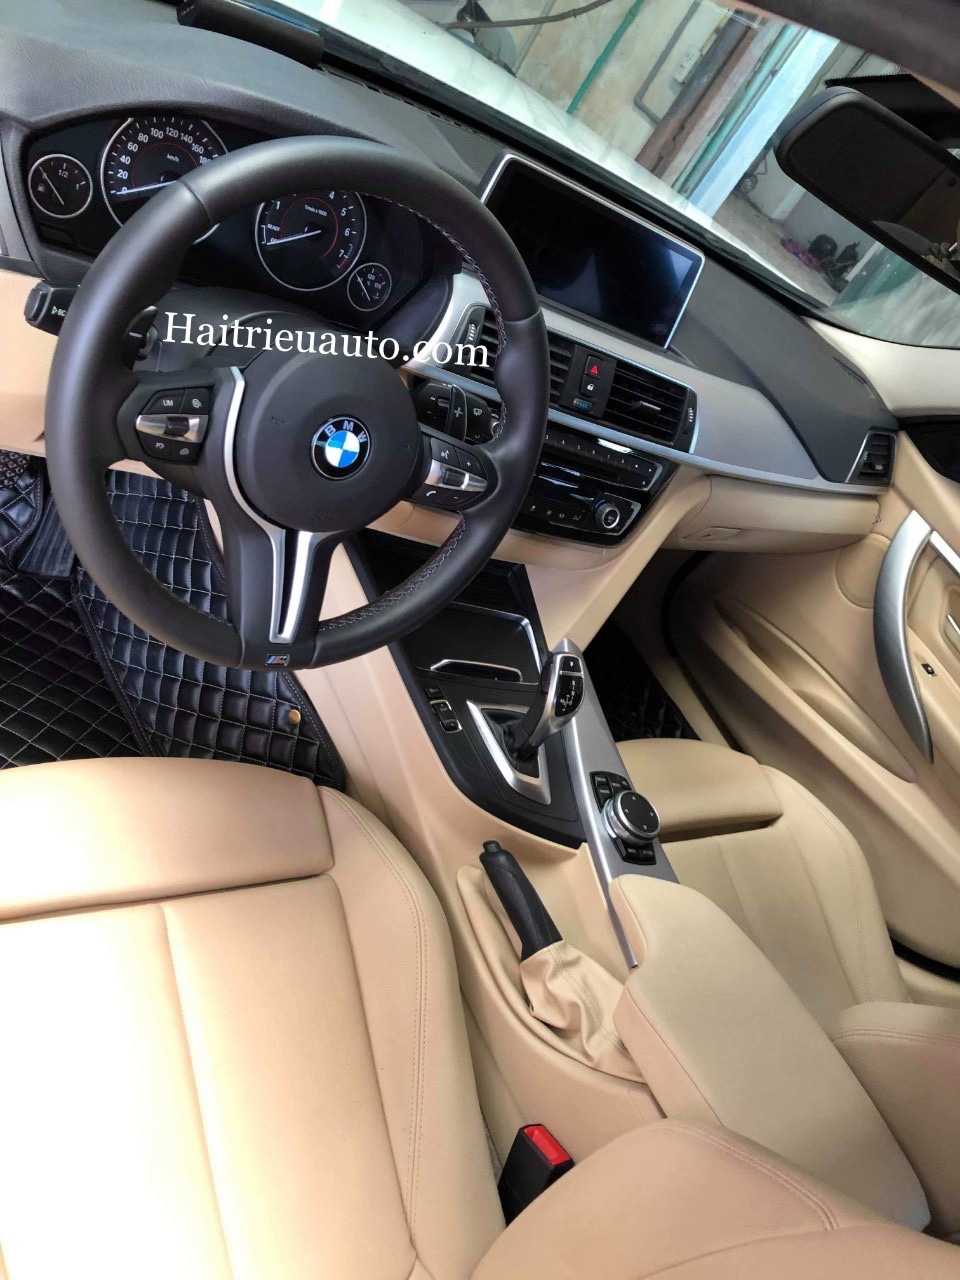 Steering Wheel Vô lăng giành riêng cho BMW  Độ Xe Long Thịnh